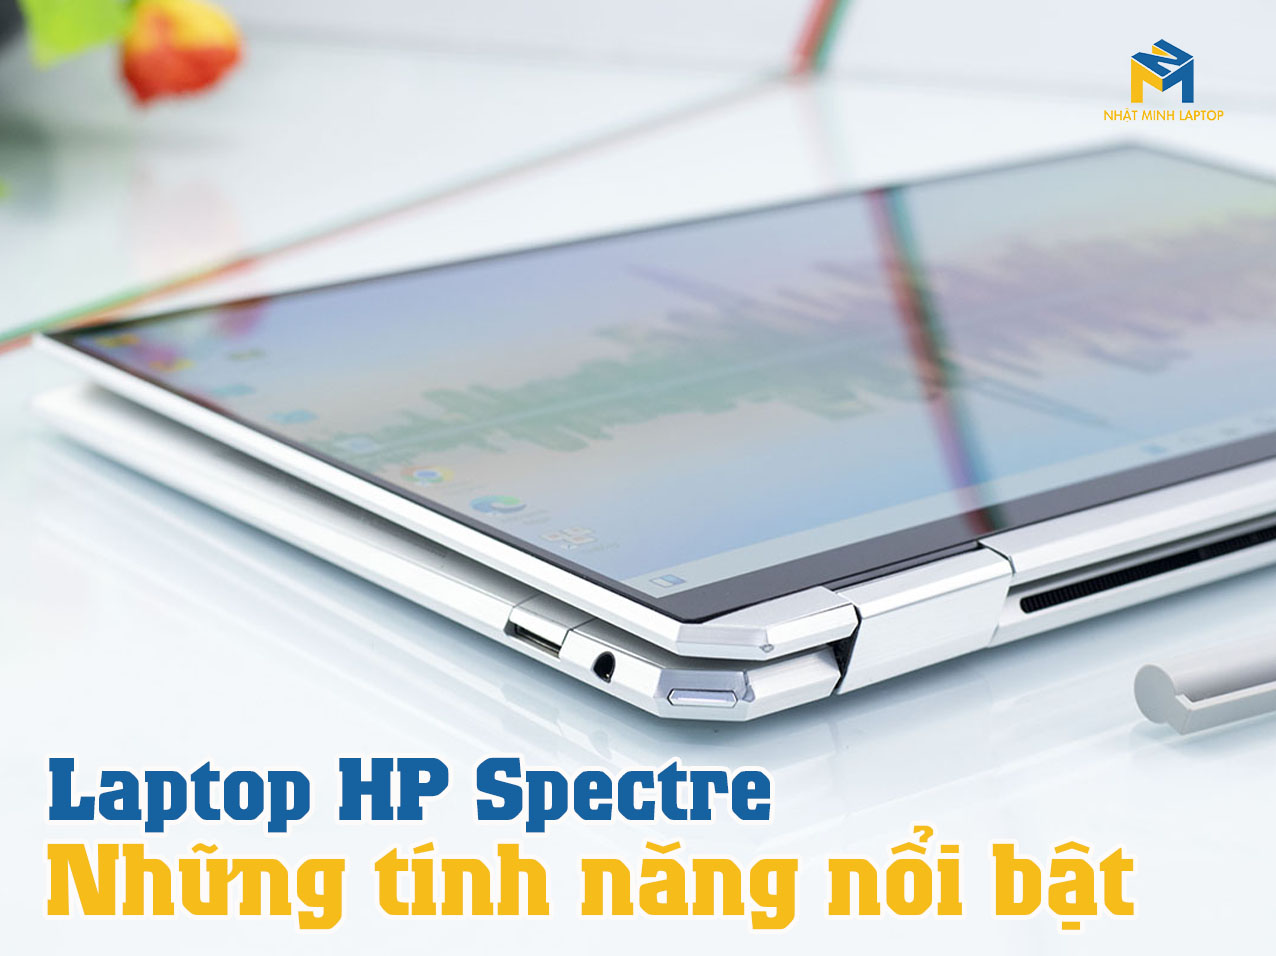 4 Dòng Laptop HP Spectre có tính năng nổi bật như thế nào?